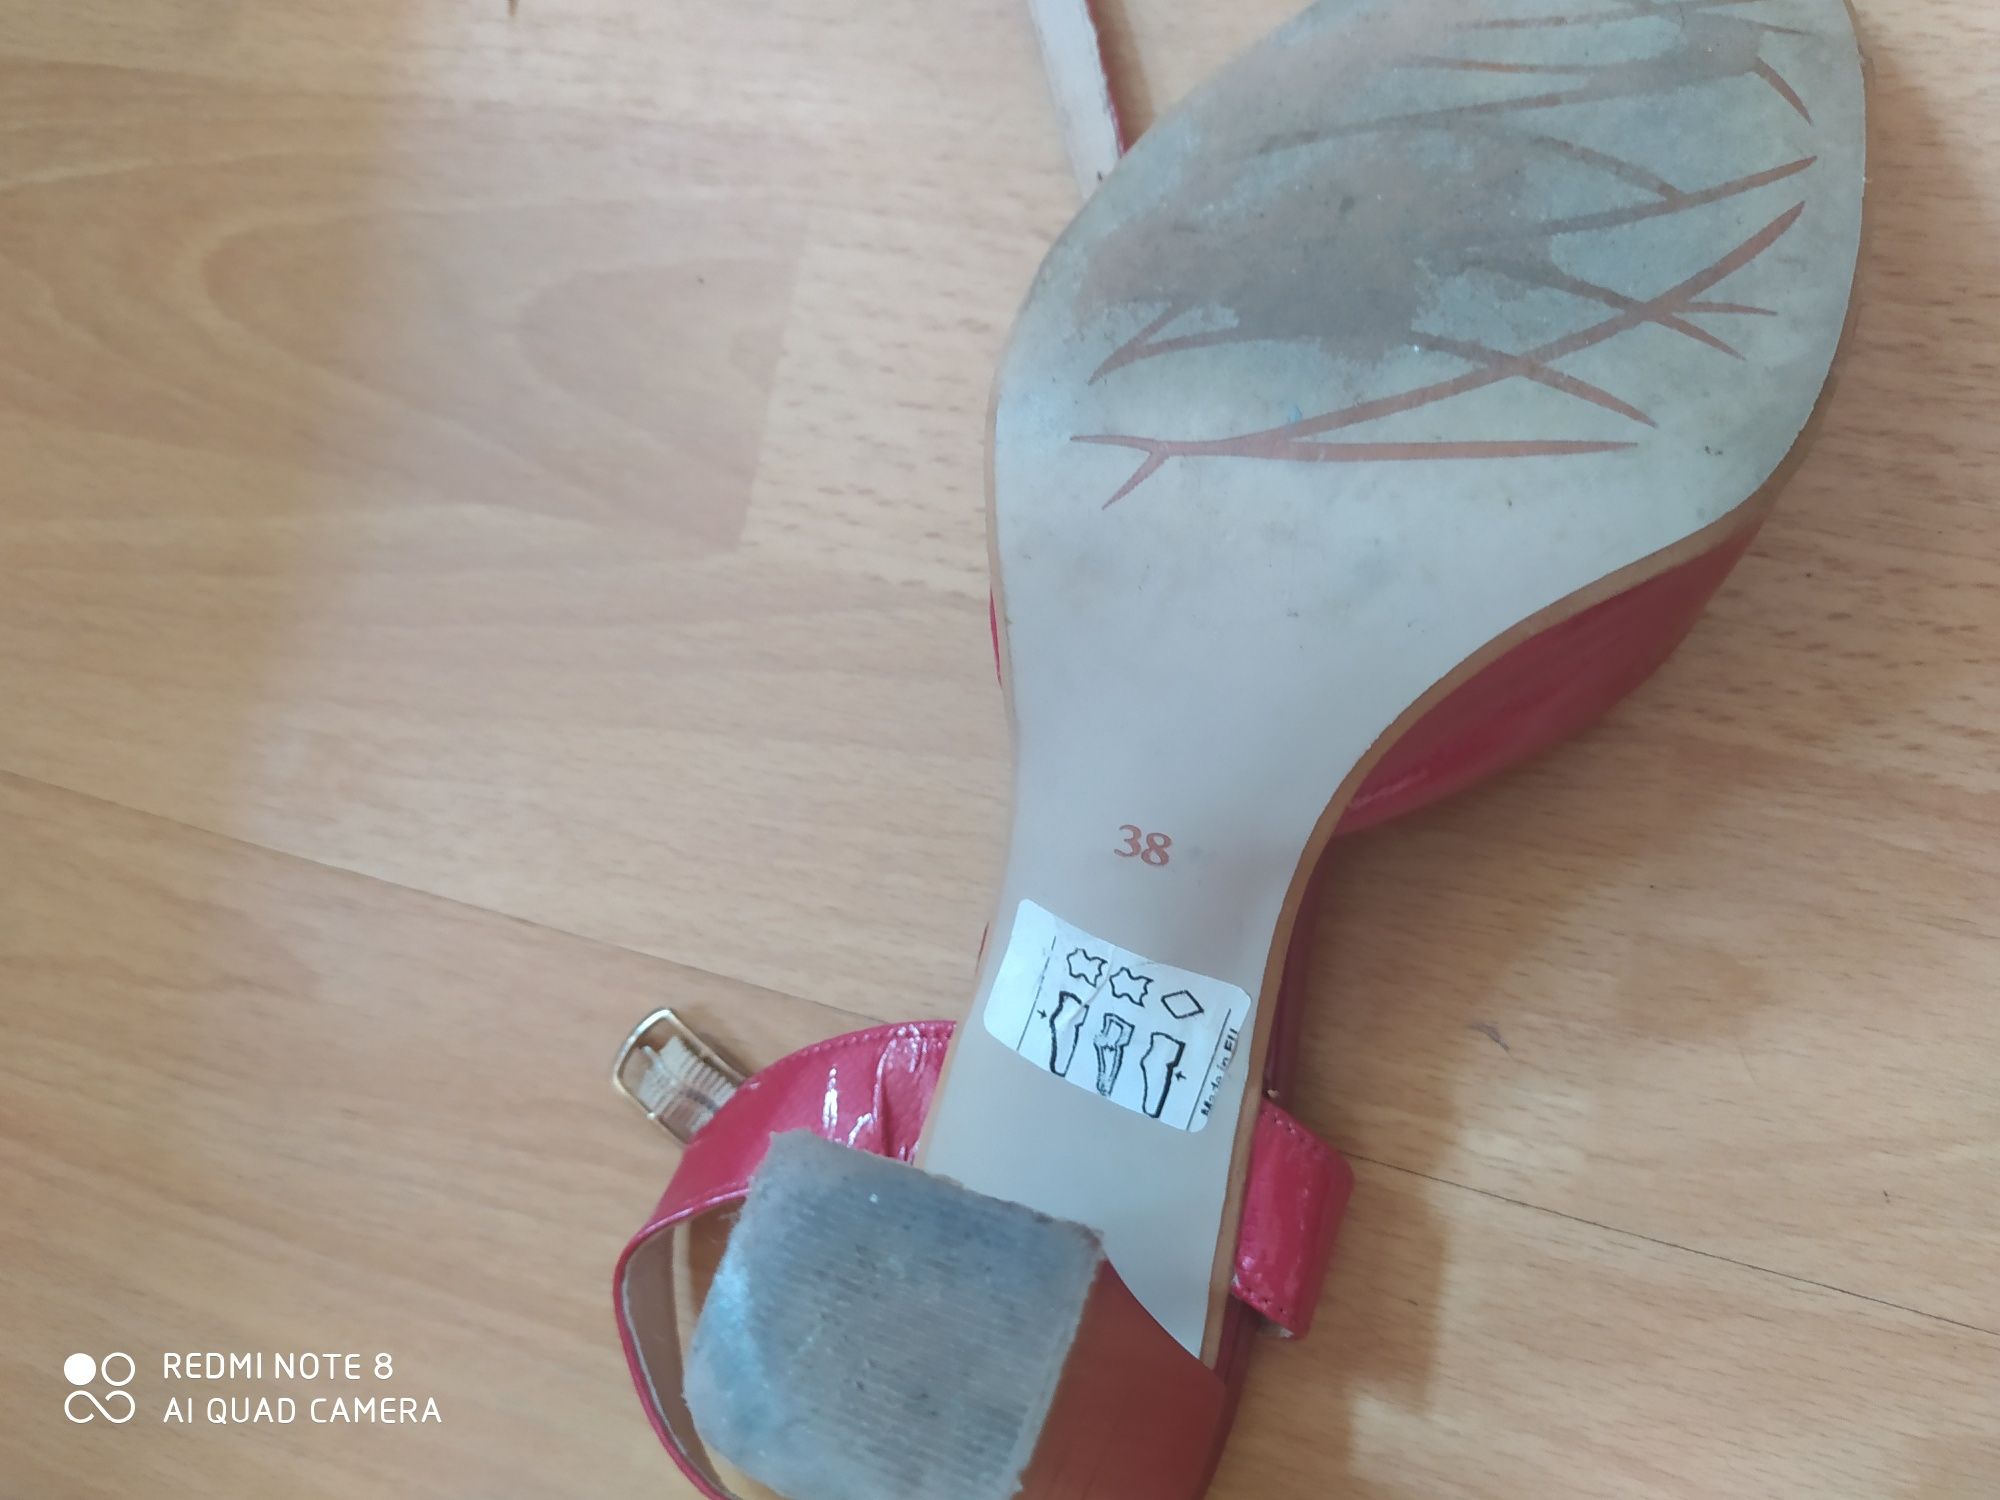 Sandały damskie skórzane markowe rozmiar 3838 skórzane lakierowane